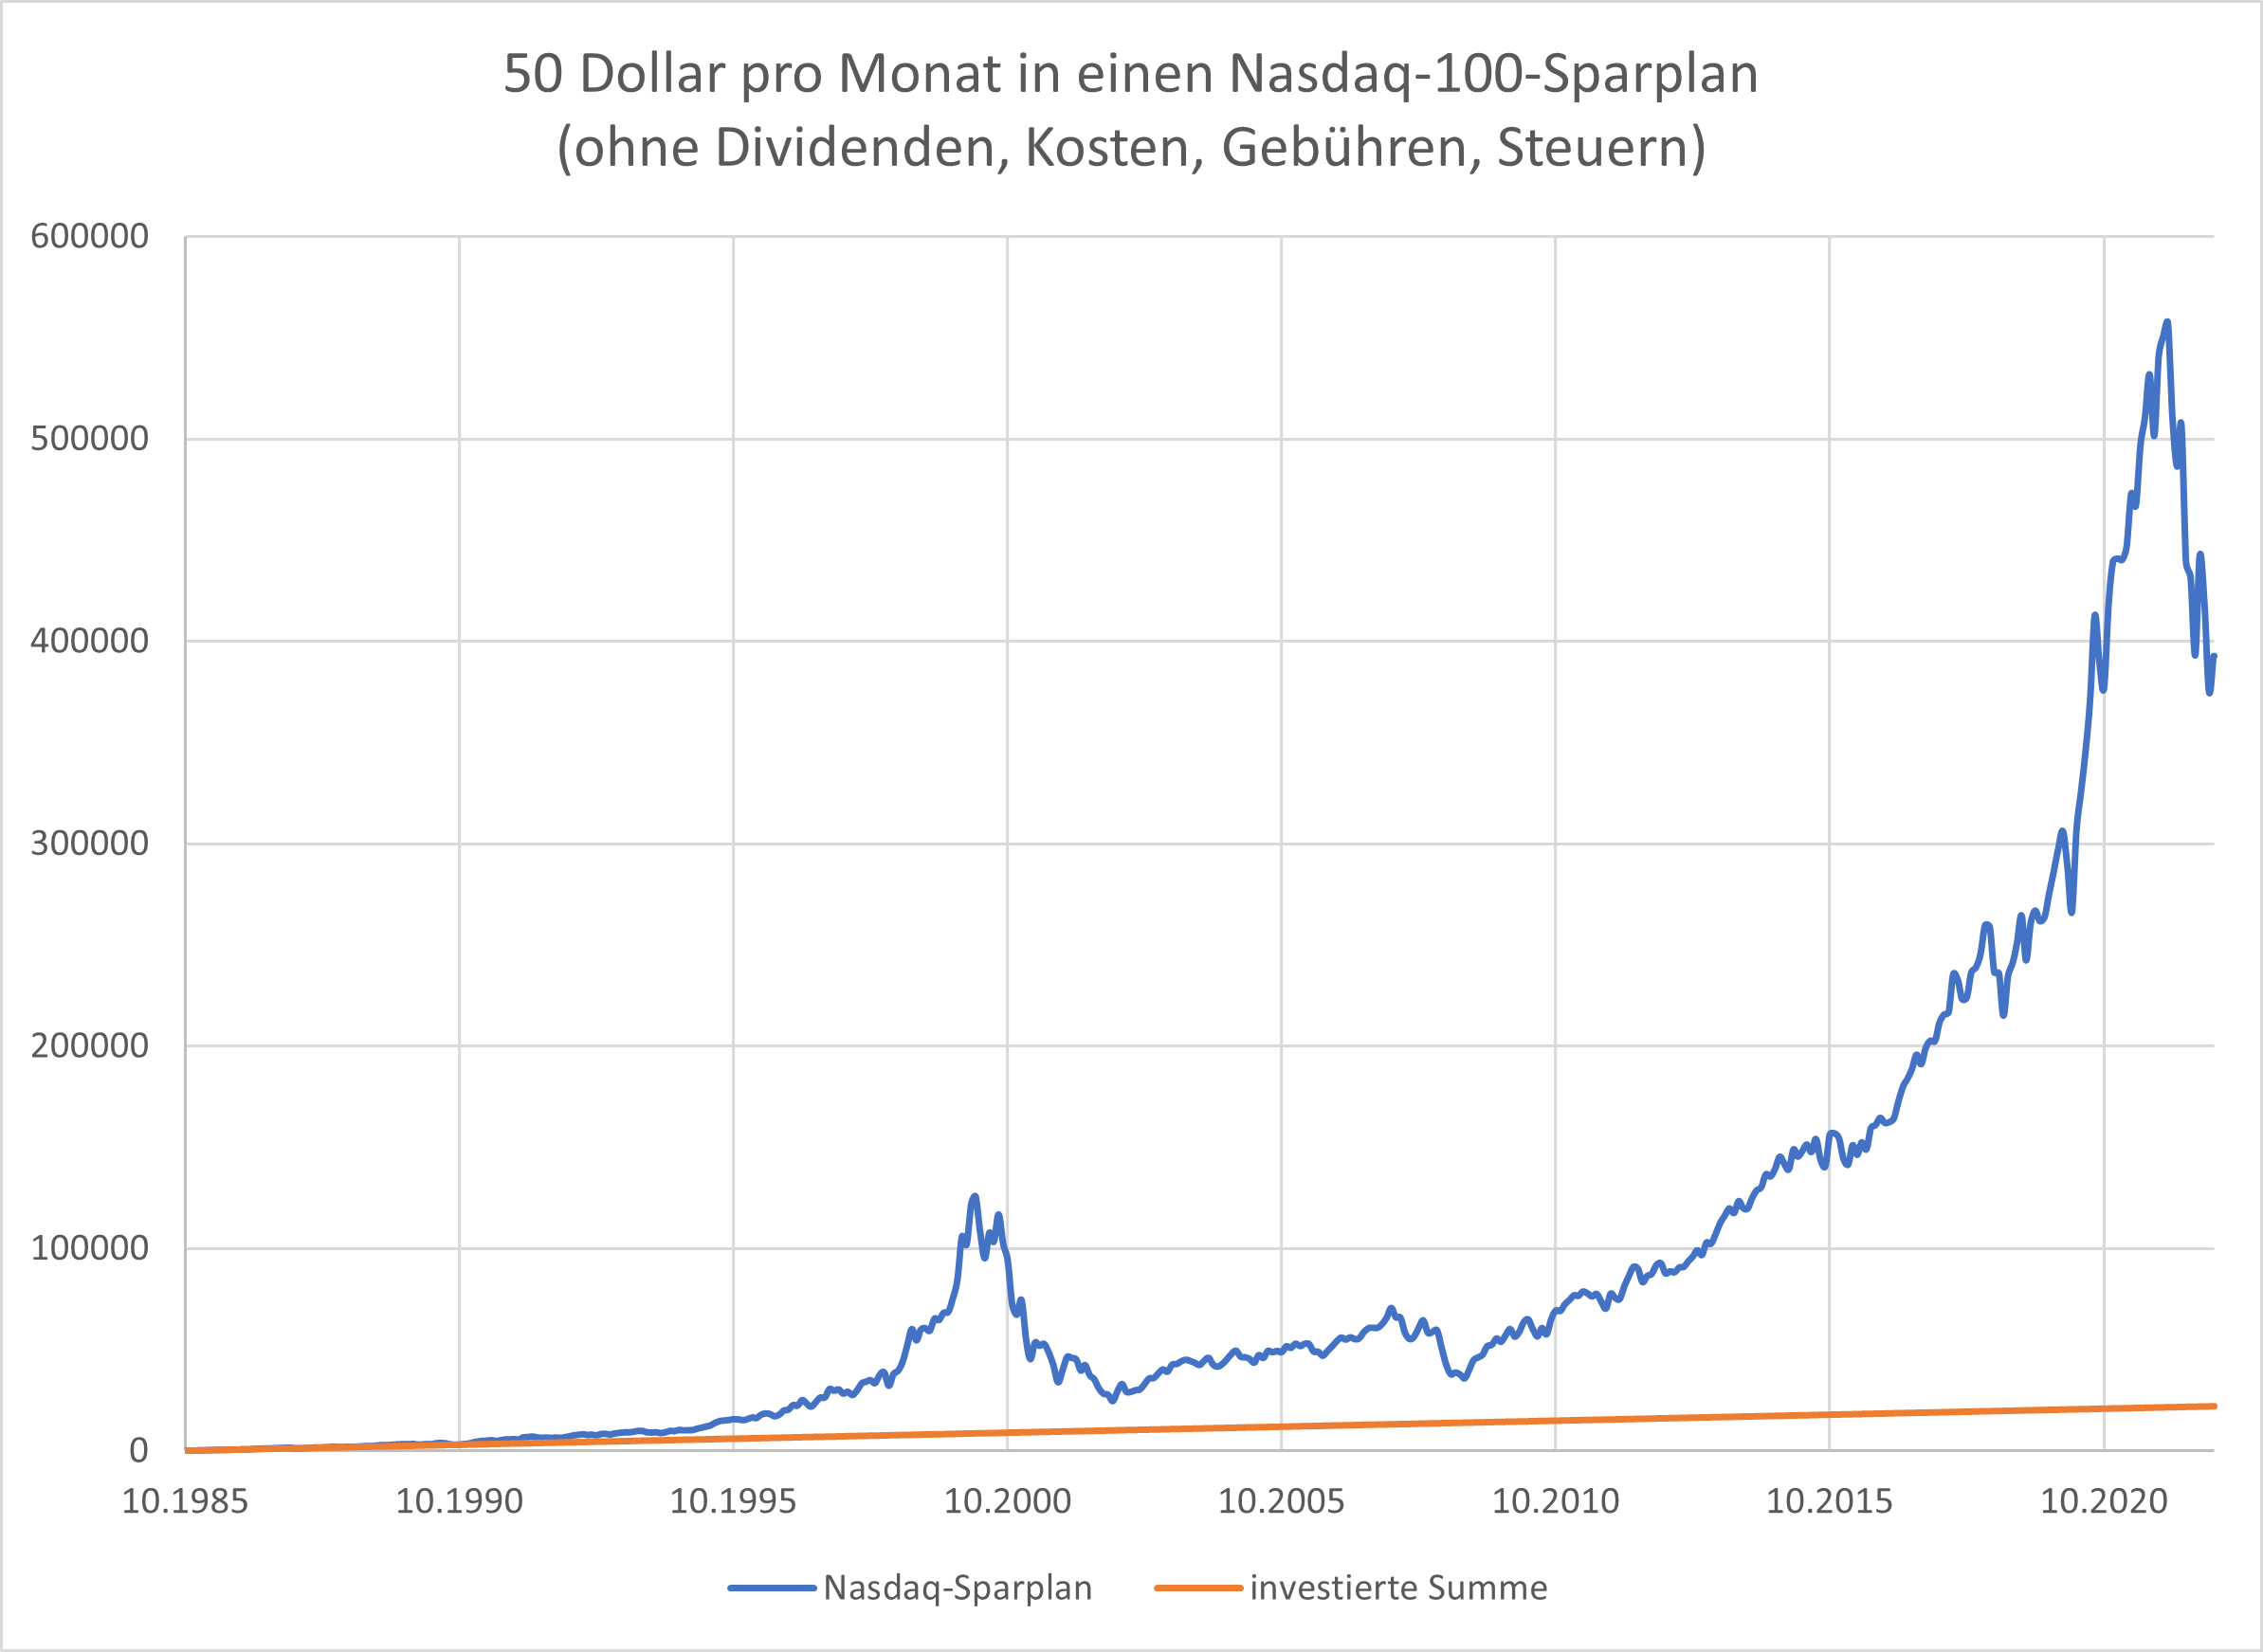 Nasdaq-100-Der-Überflieger-unter-den-Index-Investments-Oliver-Baron-GodmodeTrader.de-2